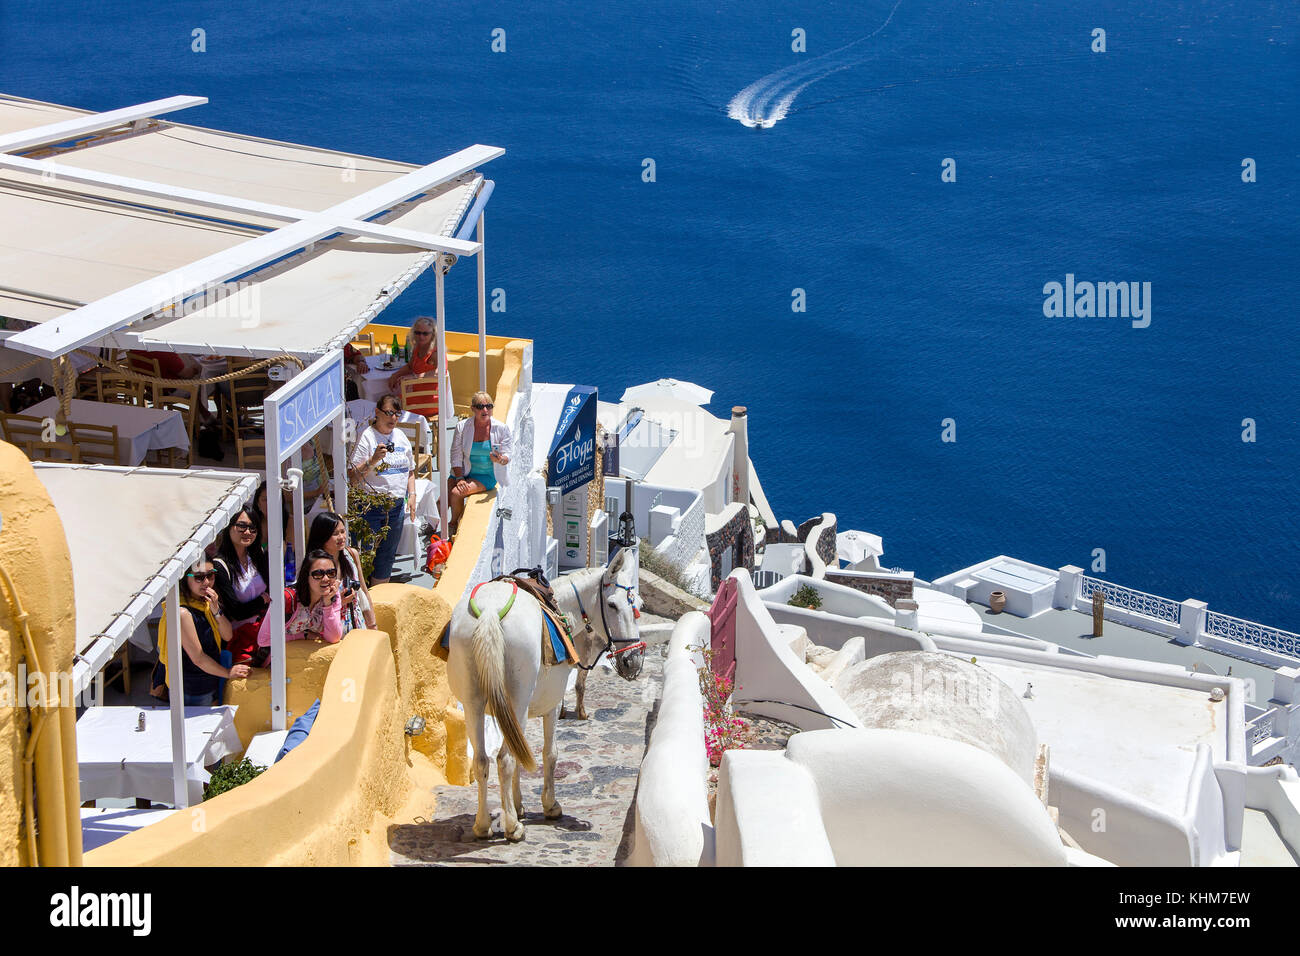 Des ânes sur le chemin vers le bas à port, passant d'une taverne grecque, Oia, Santorin, Cyclades, l'île de la mer Égée, Grèce Banque D'Images